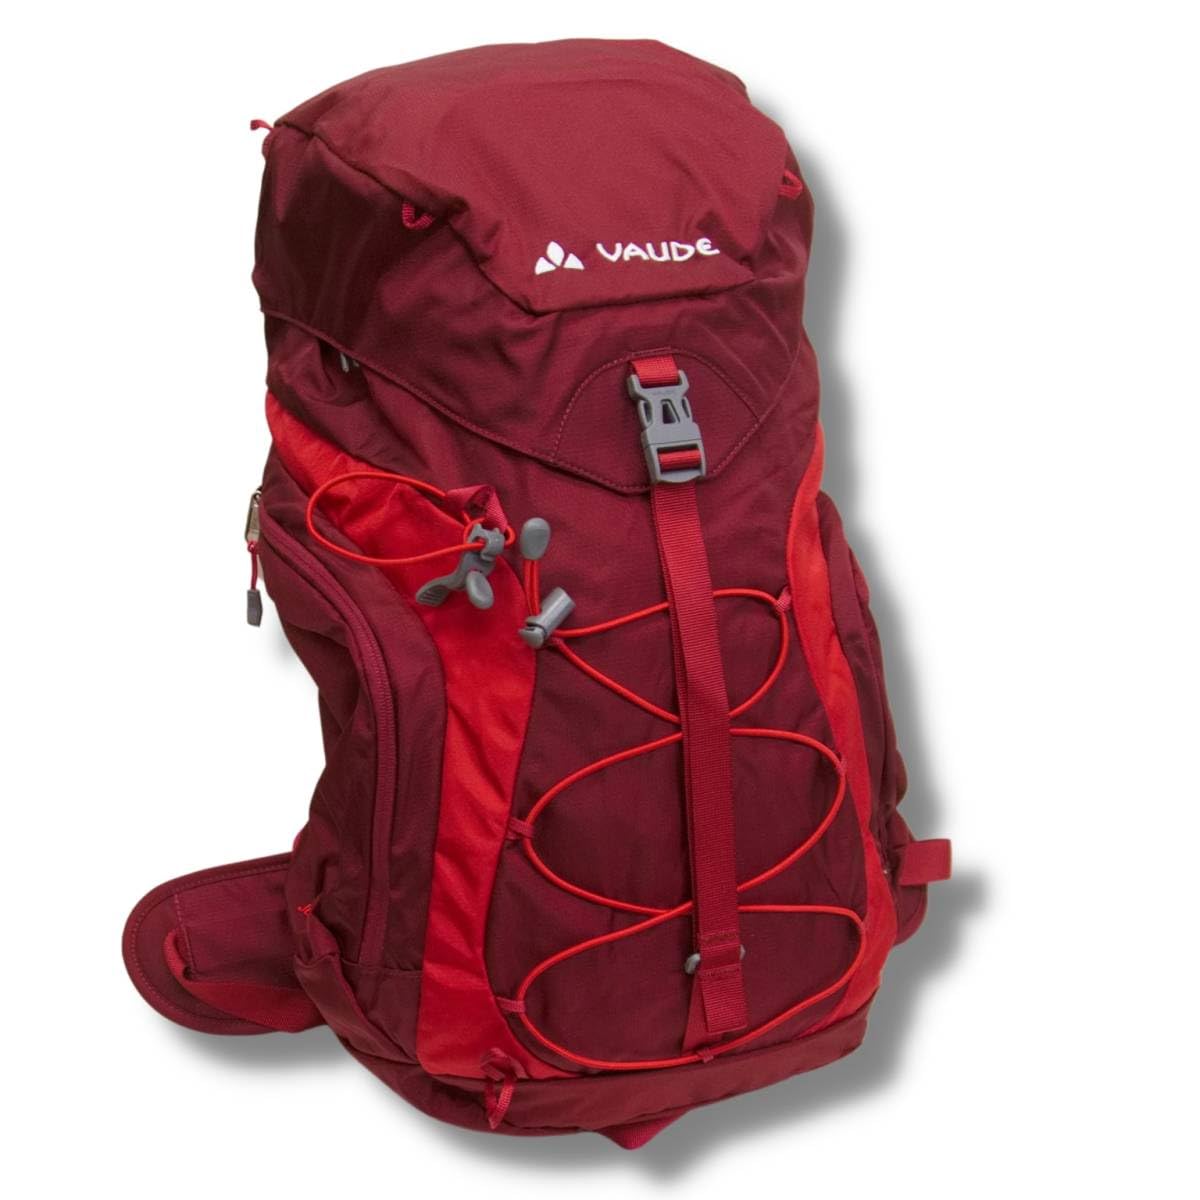 ファウデ ジュラ24 RED デイパック バックパック ザック リュック 登山 トレッキング レインカバー付 背面換気